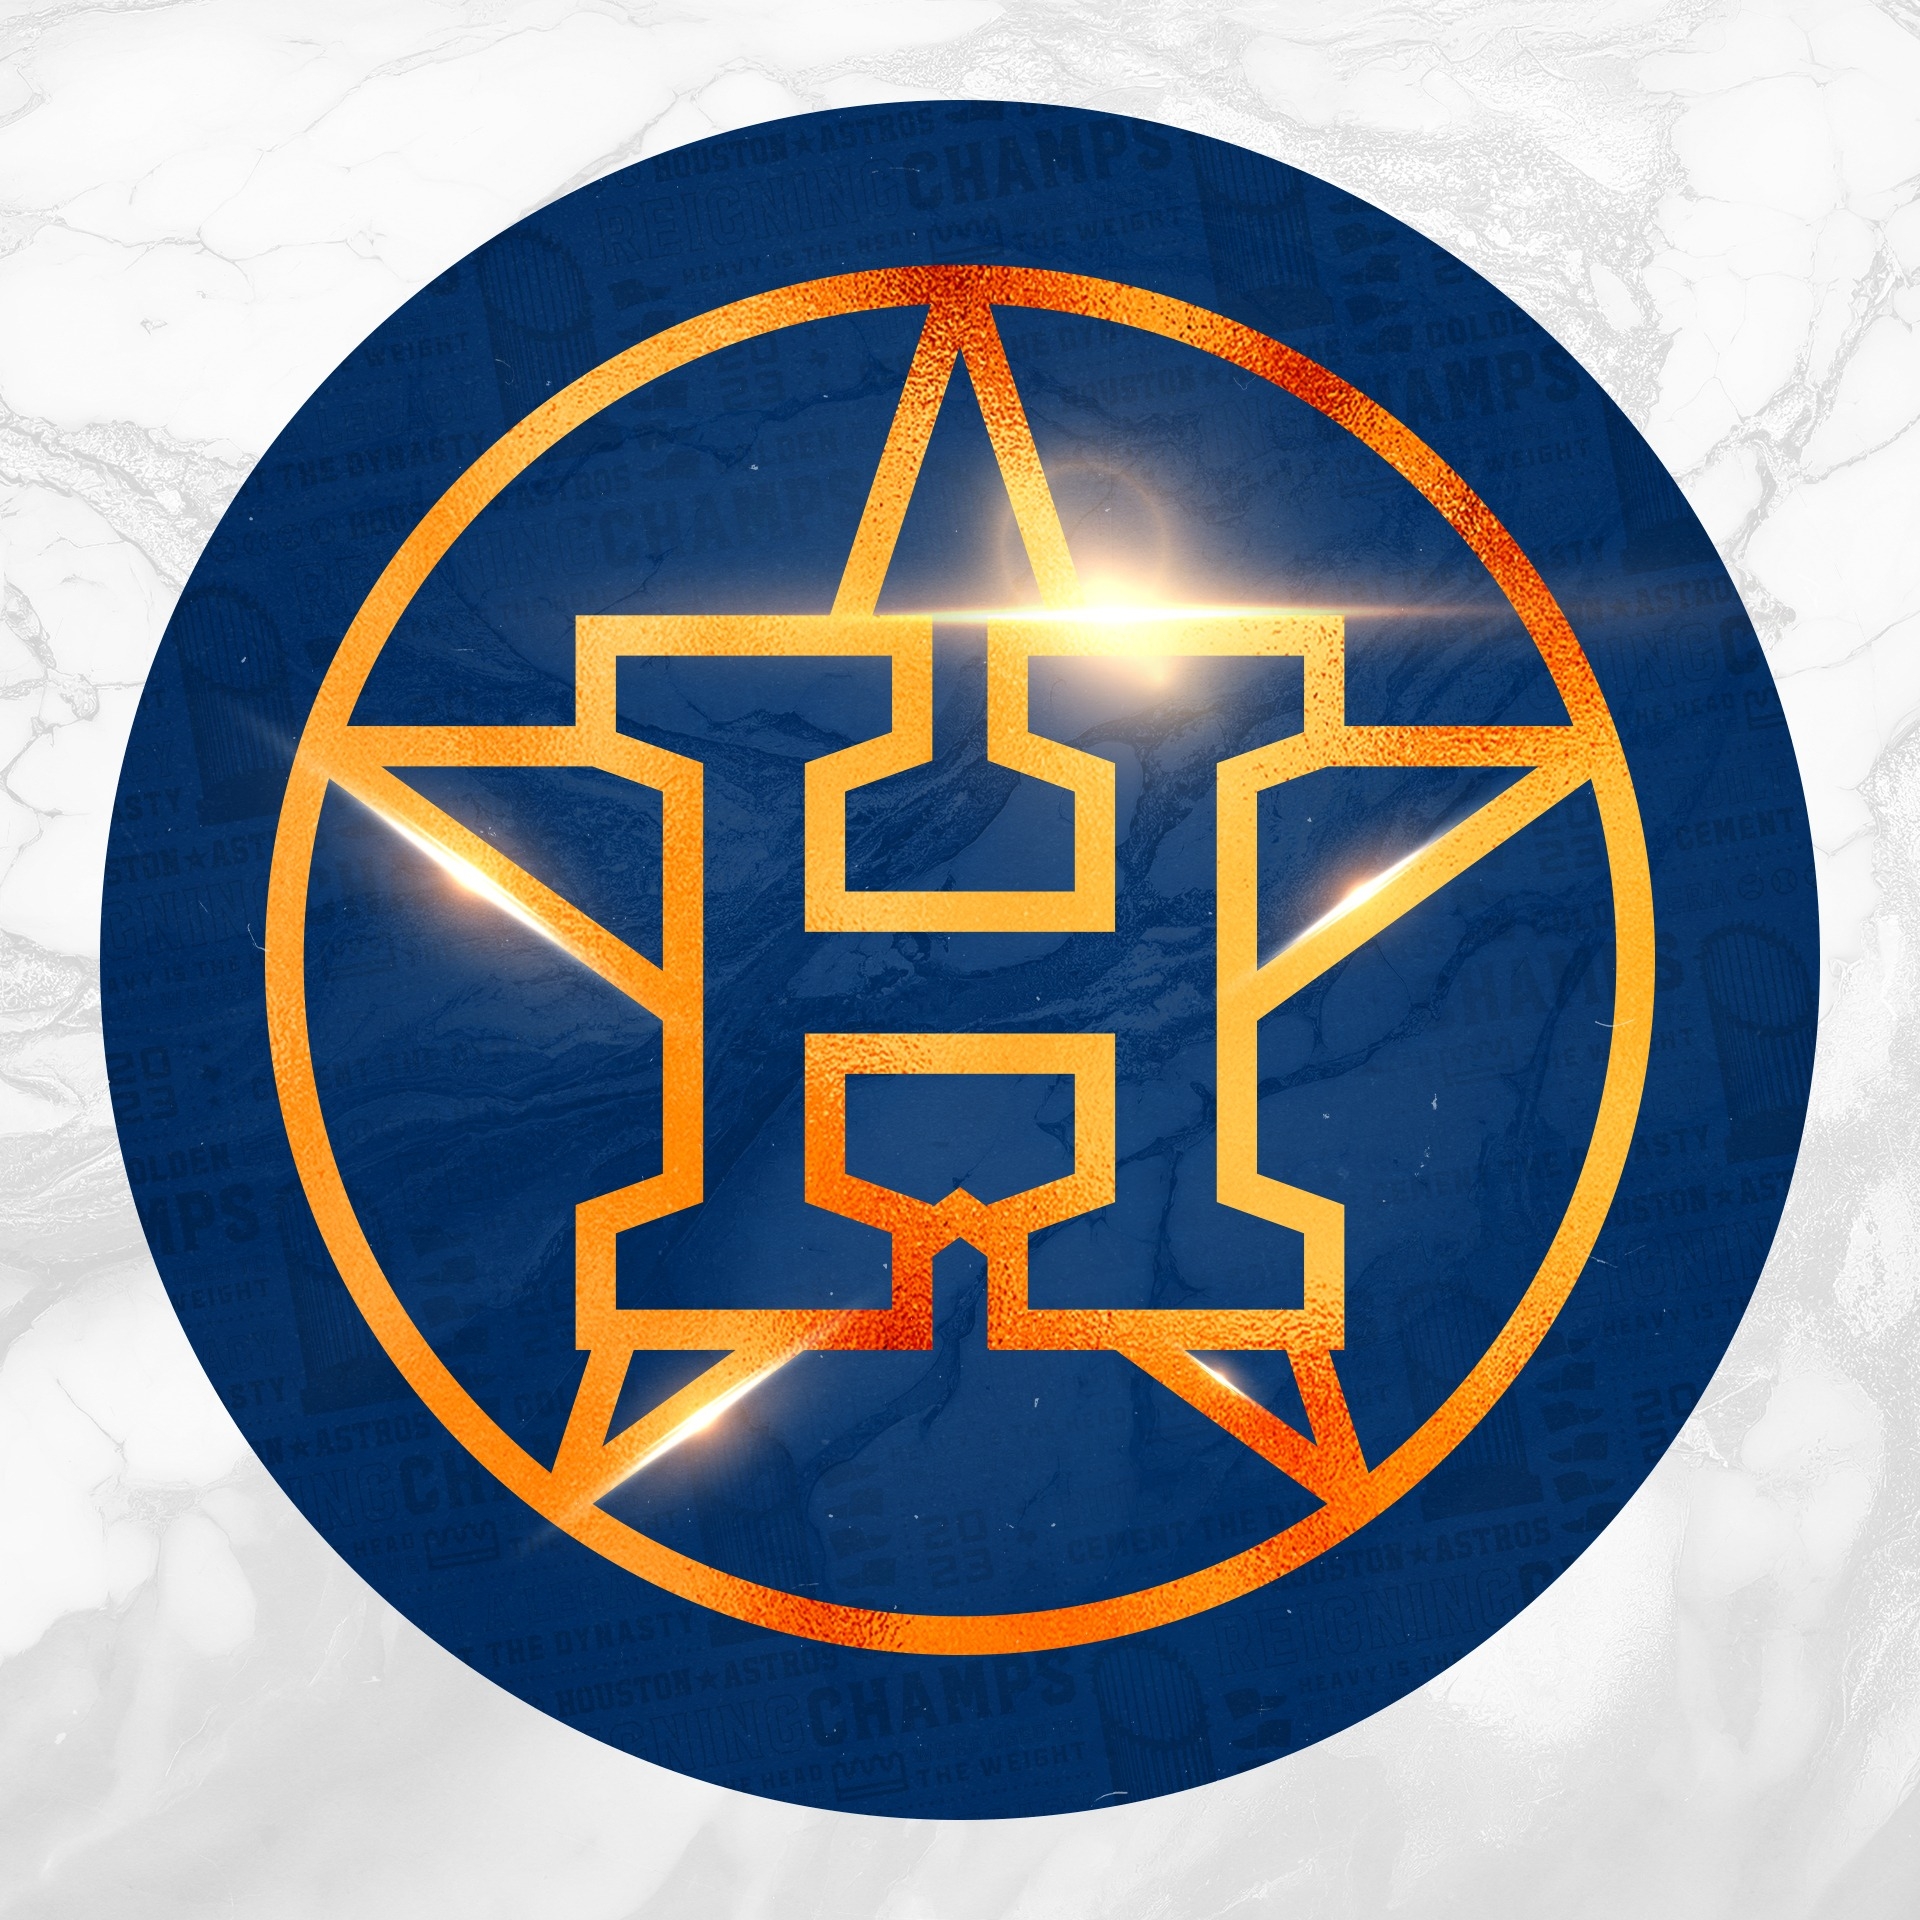 Houston Astros | Organizational Profile, Work & Jobs